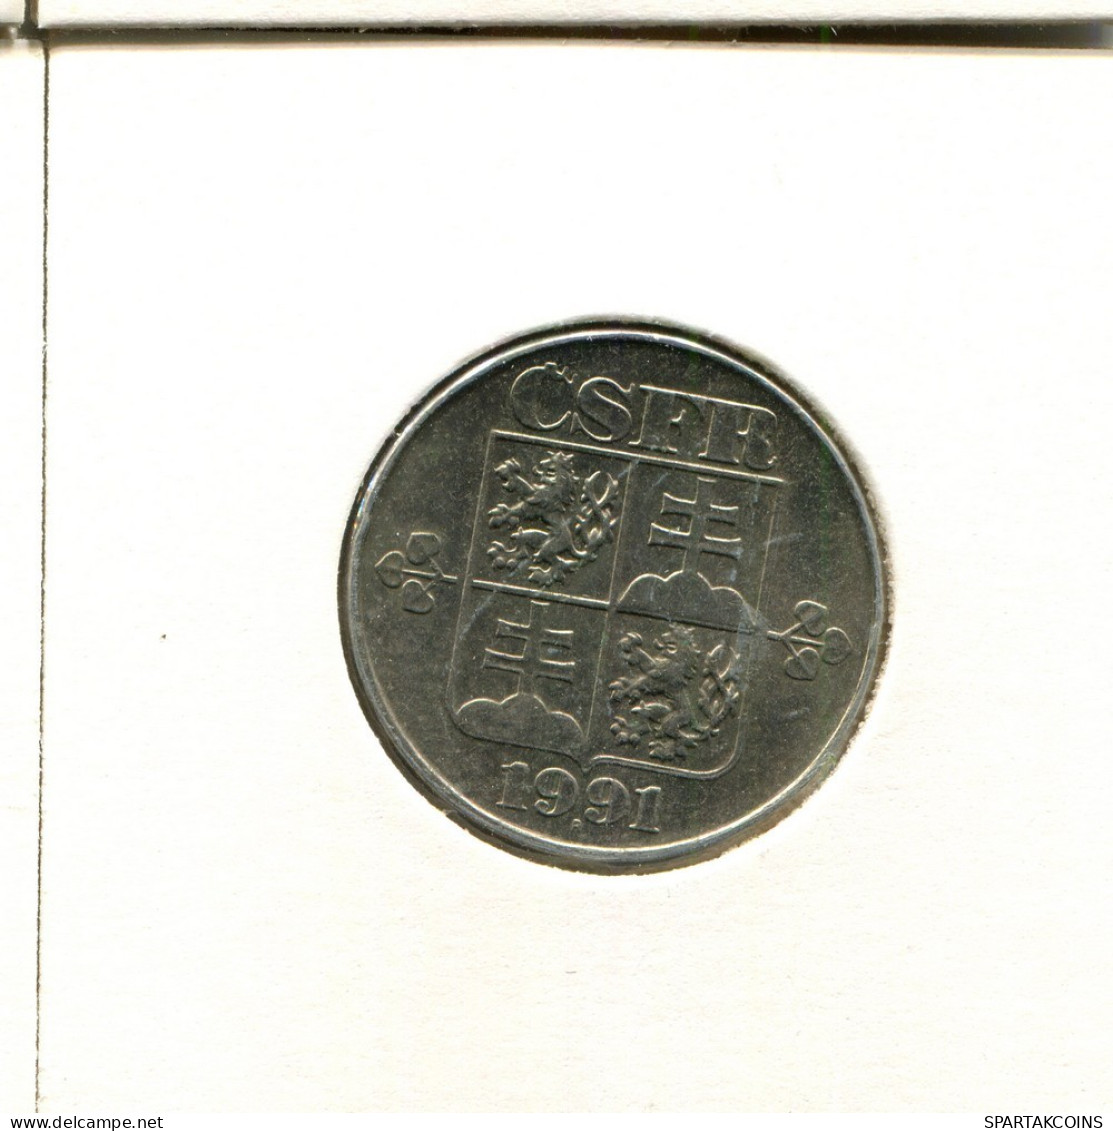 2 KORUN 1991 TSCHECHOSLOWAKEI CZECHOSLOWAKEI SLOVAKIA Münze #AZ959.D.A - Czechoslovakia